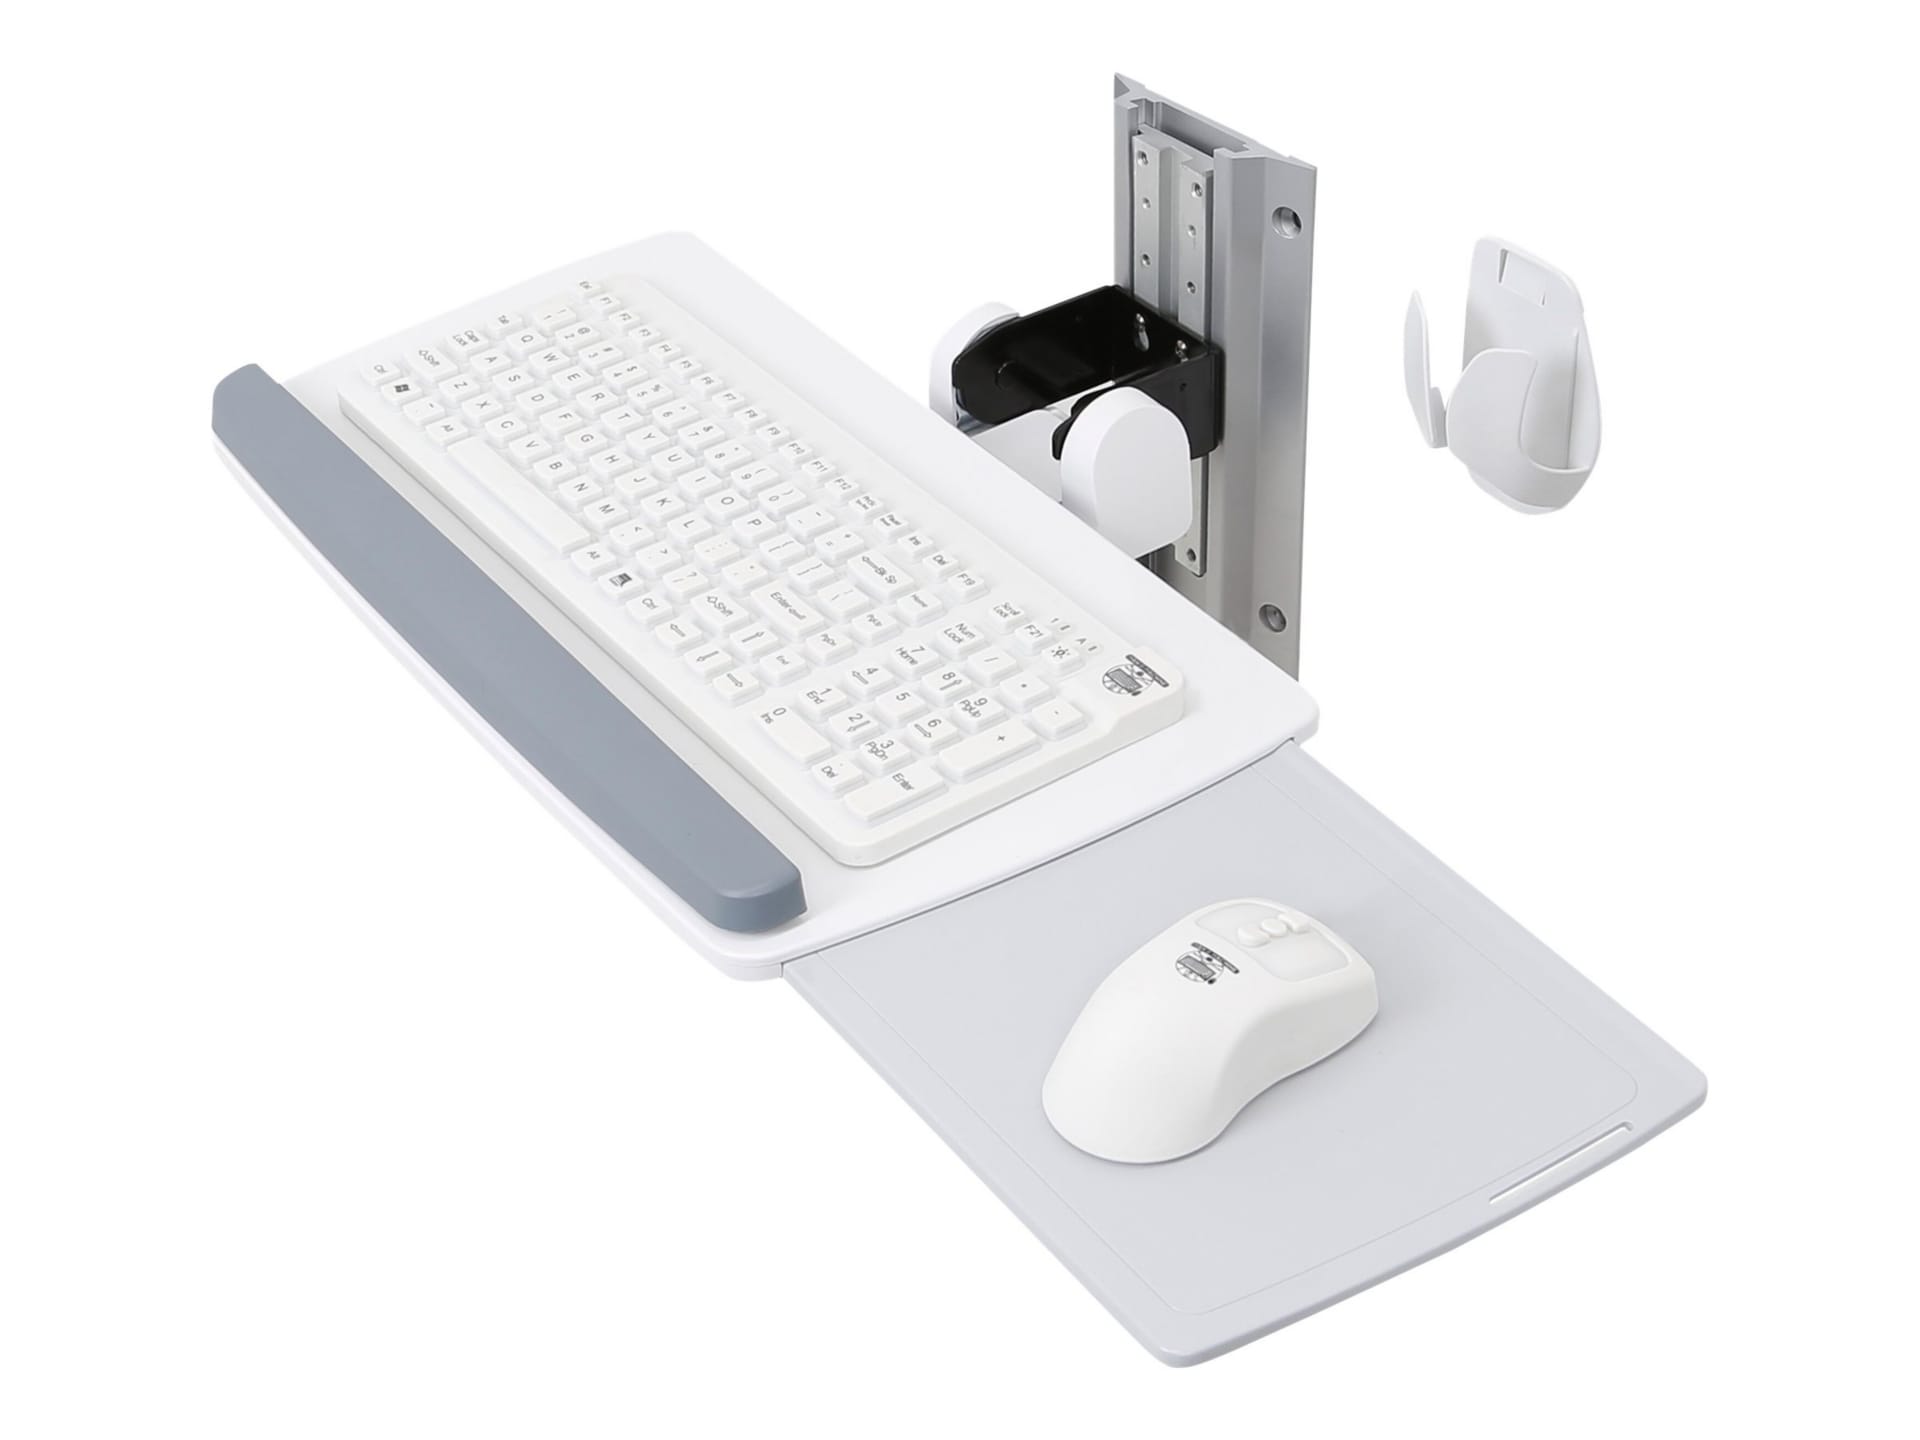 Ergotron Neo-Flex keyboard/mouse platform - slide-out